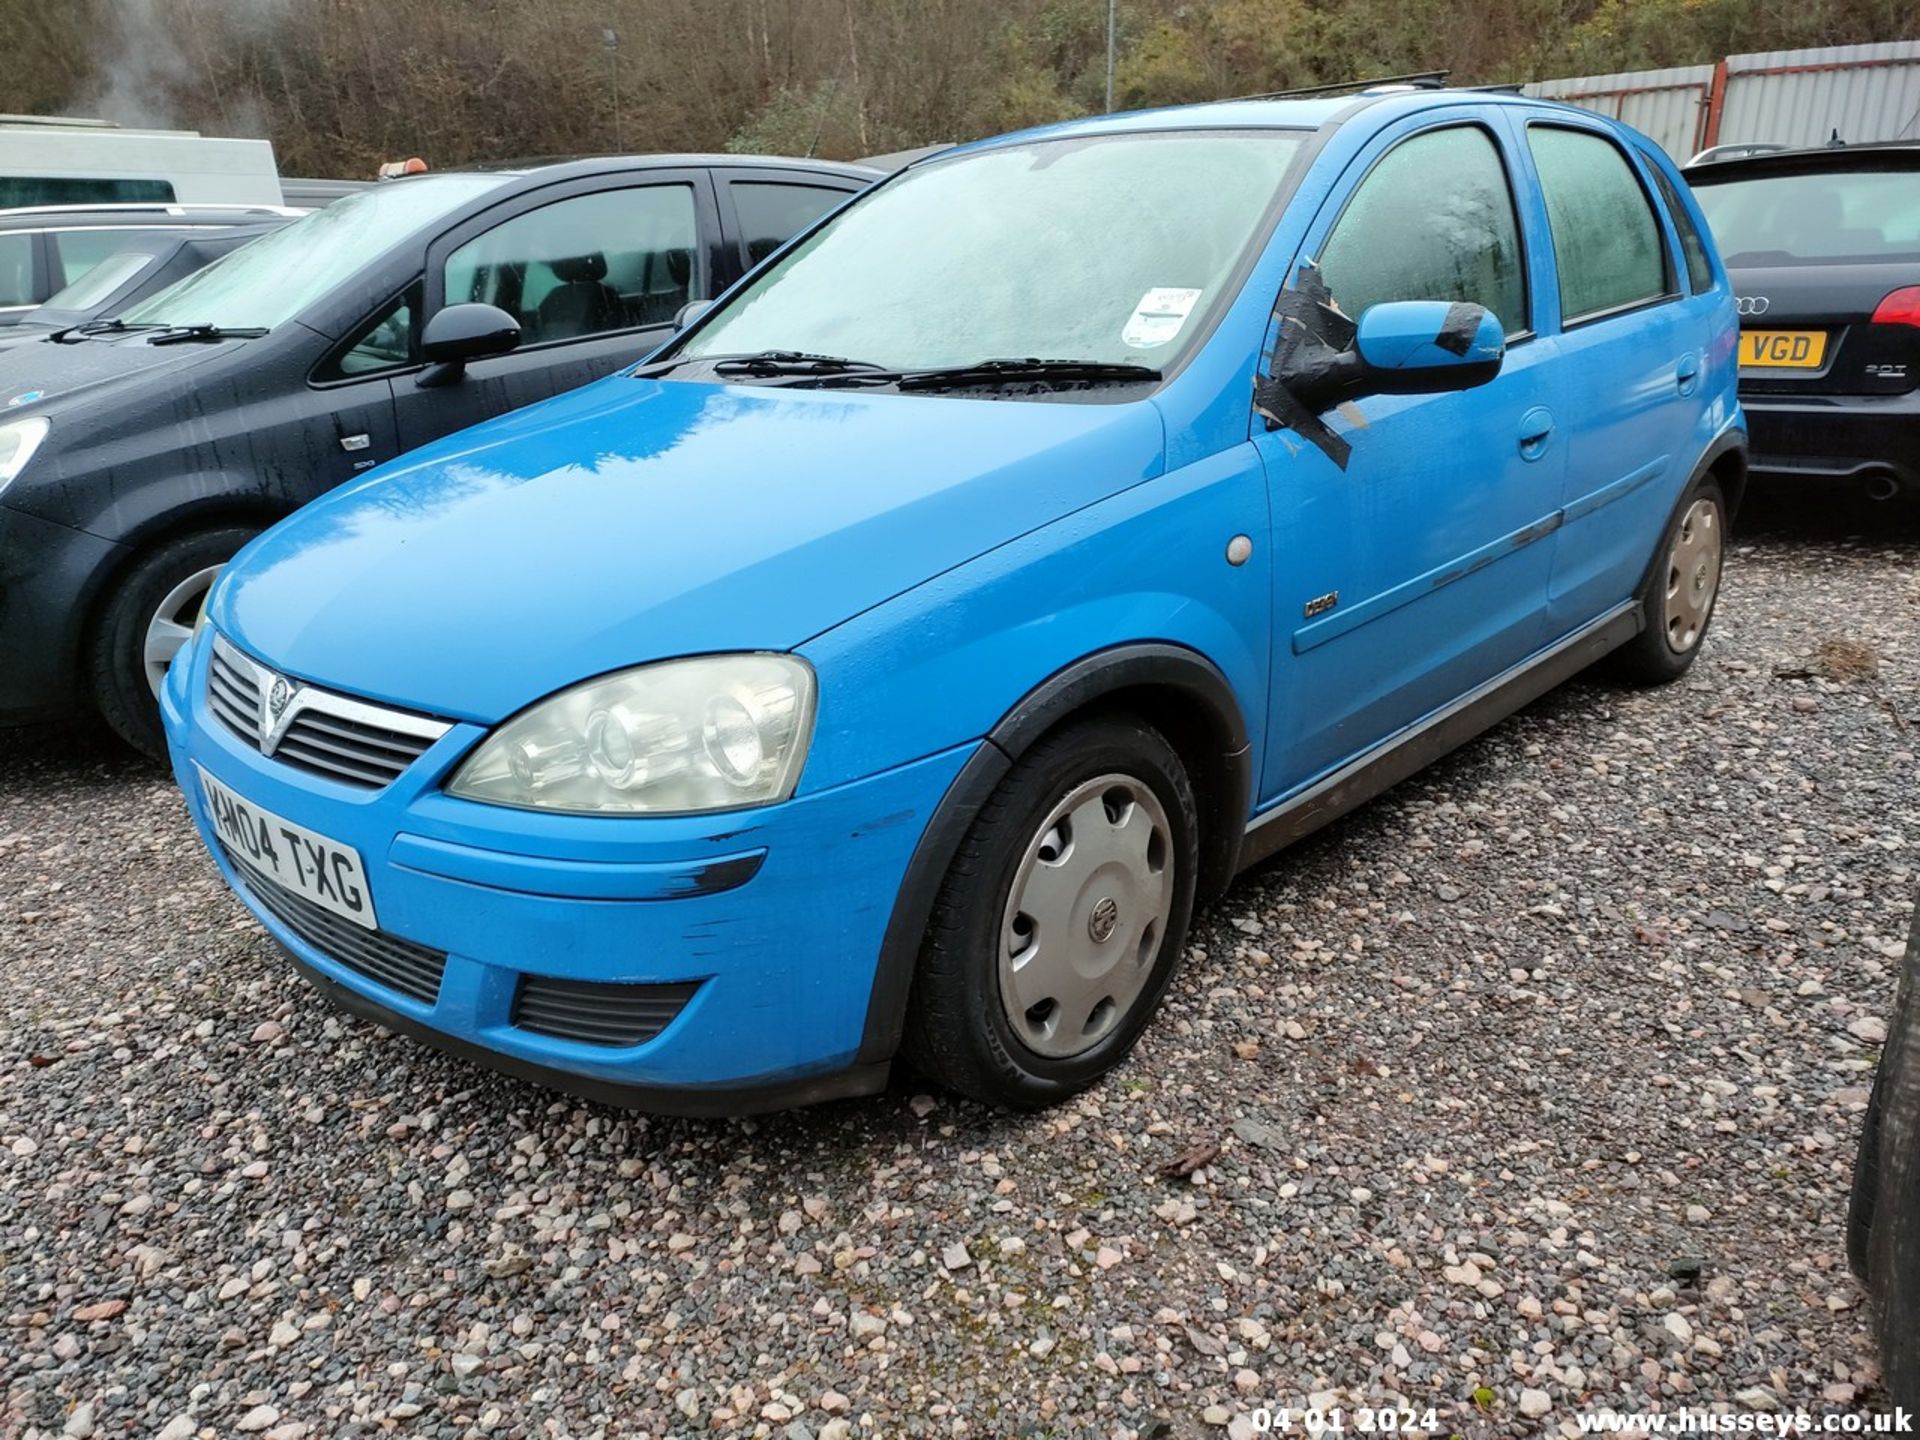 04/04 VAUXHALL CORSA DESIGN 16V - 1199cc 5dr Hatchback (Blue, 96k) - Image 10 of 38